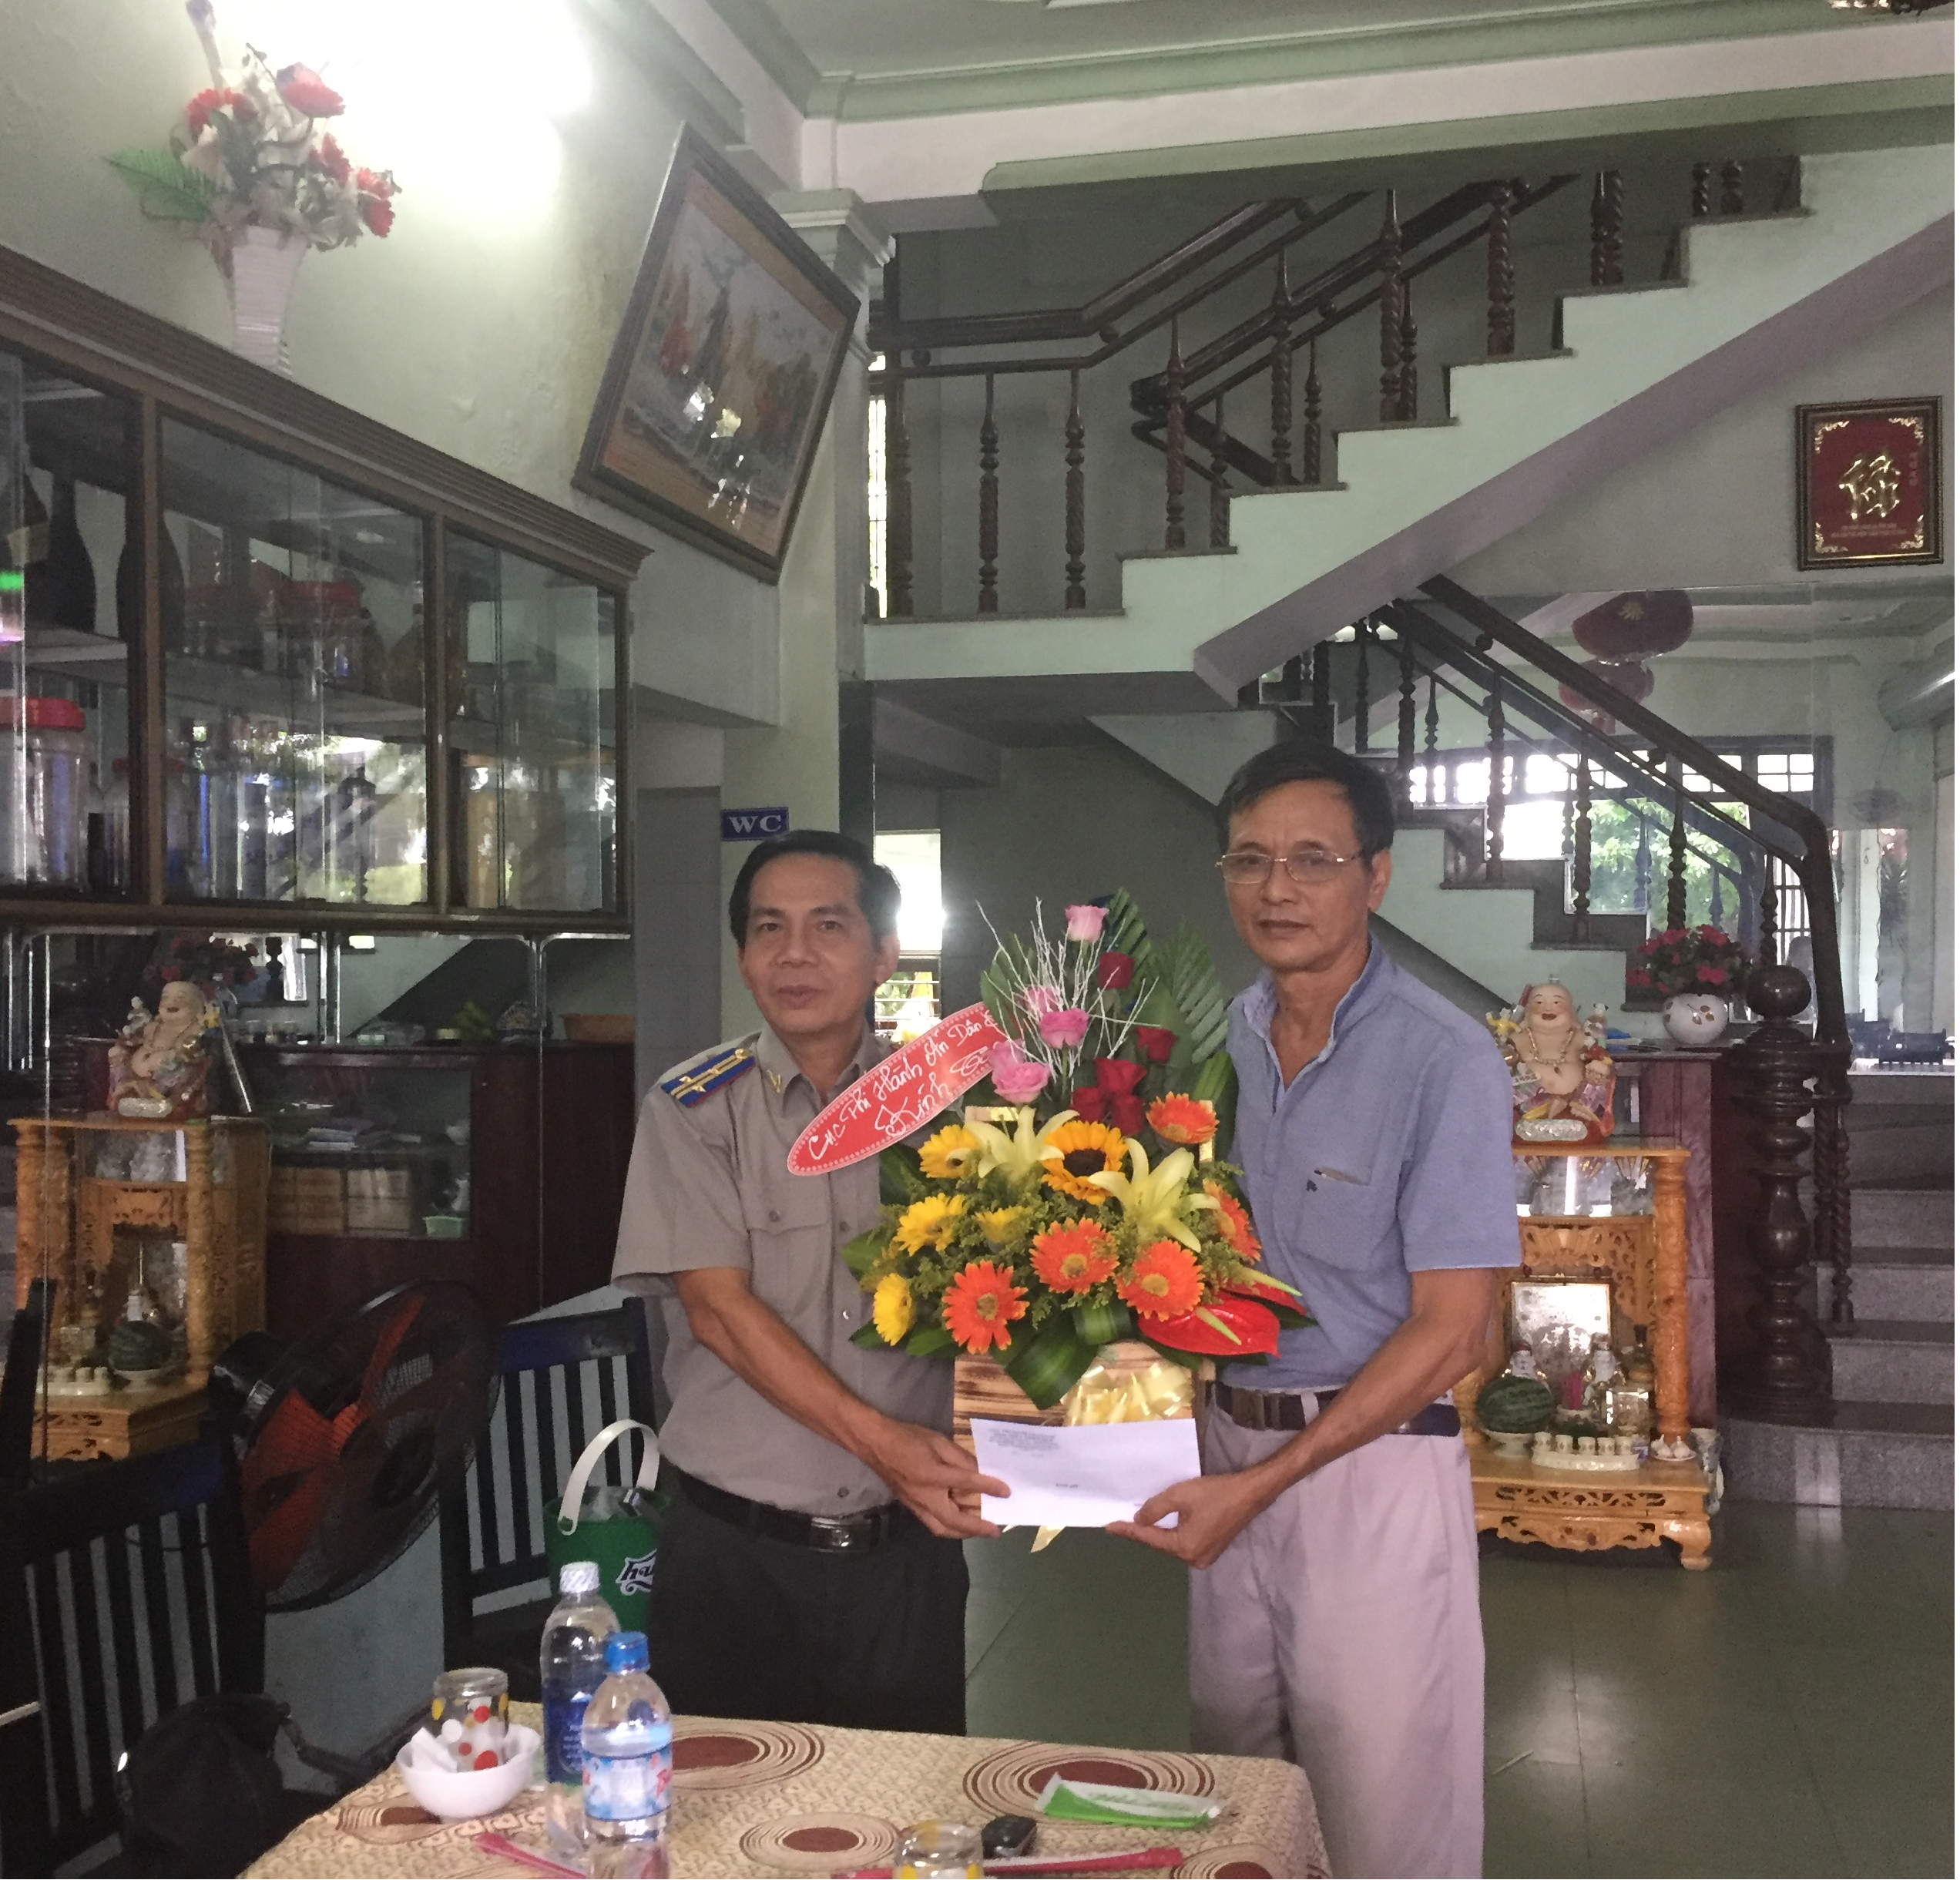 Chi cục Thi hành án dân sự thị xã Hương Trà tổ chức buổi gặp mặt chia tay đồng chí Nguyễn Văn Bá nghỉ hưu theo chế độ